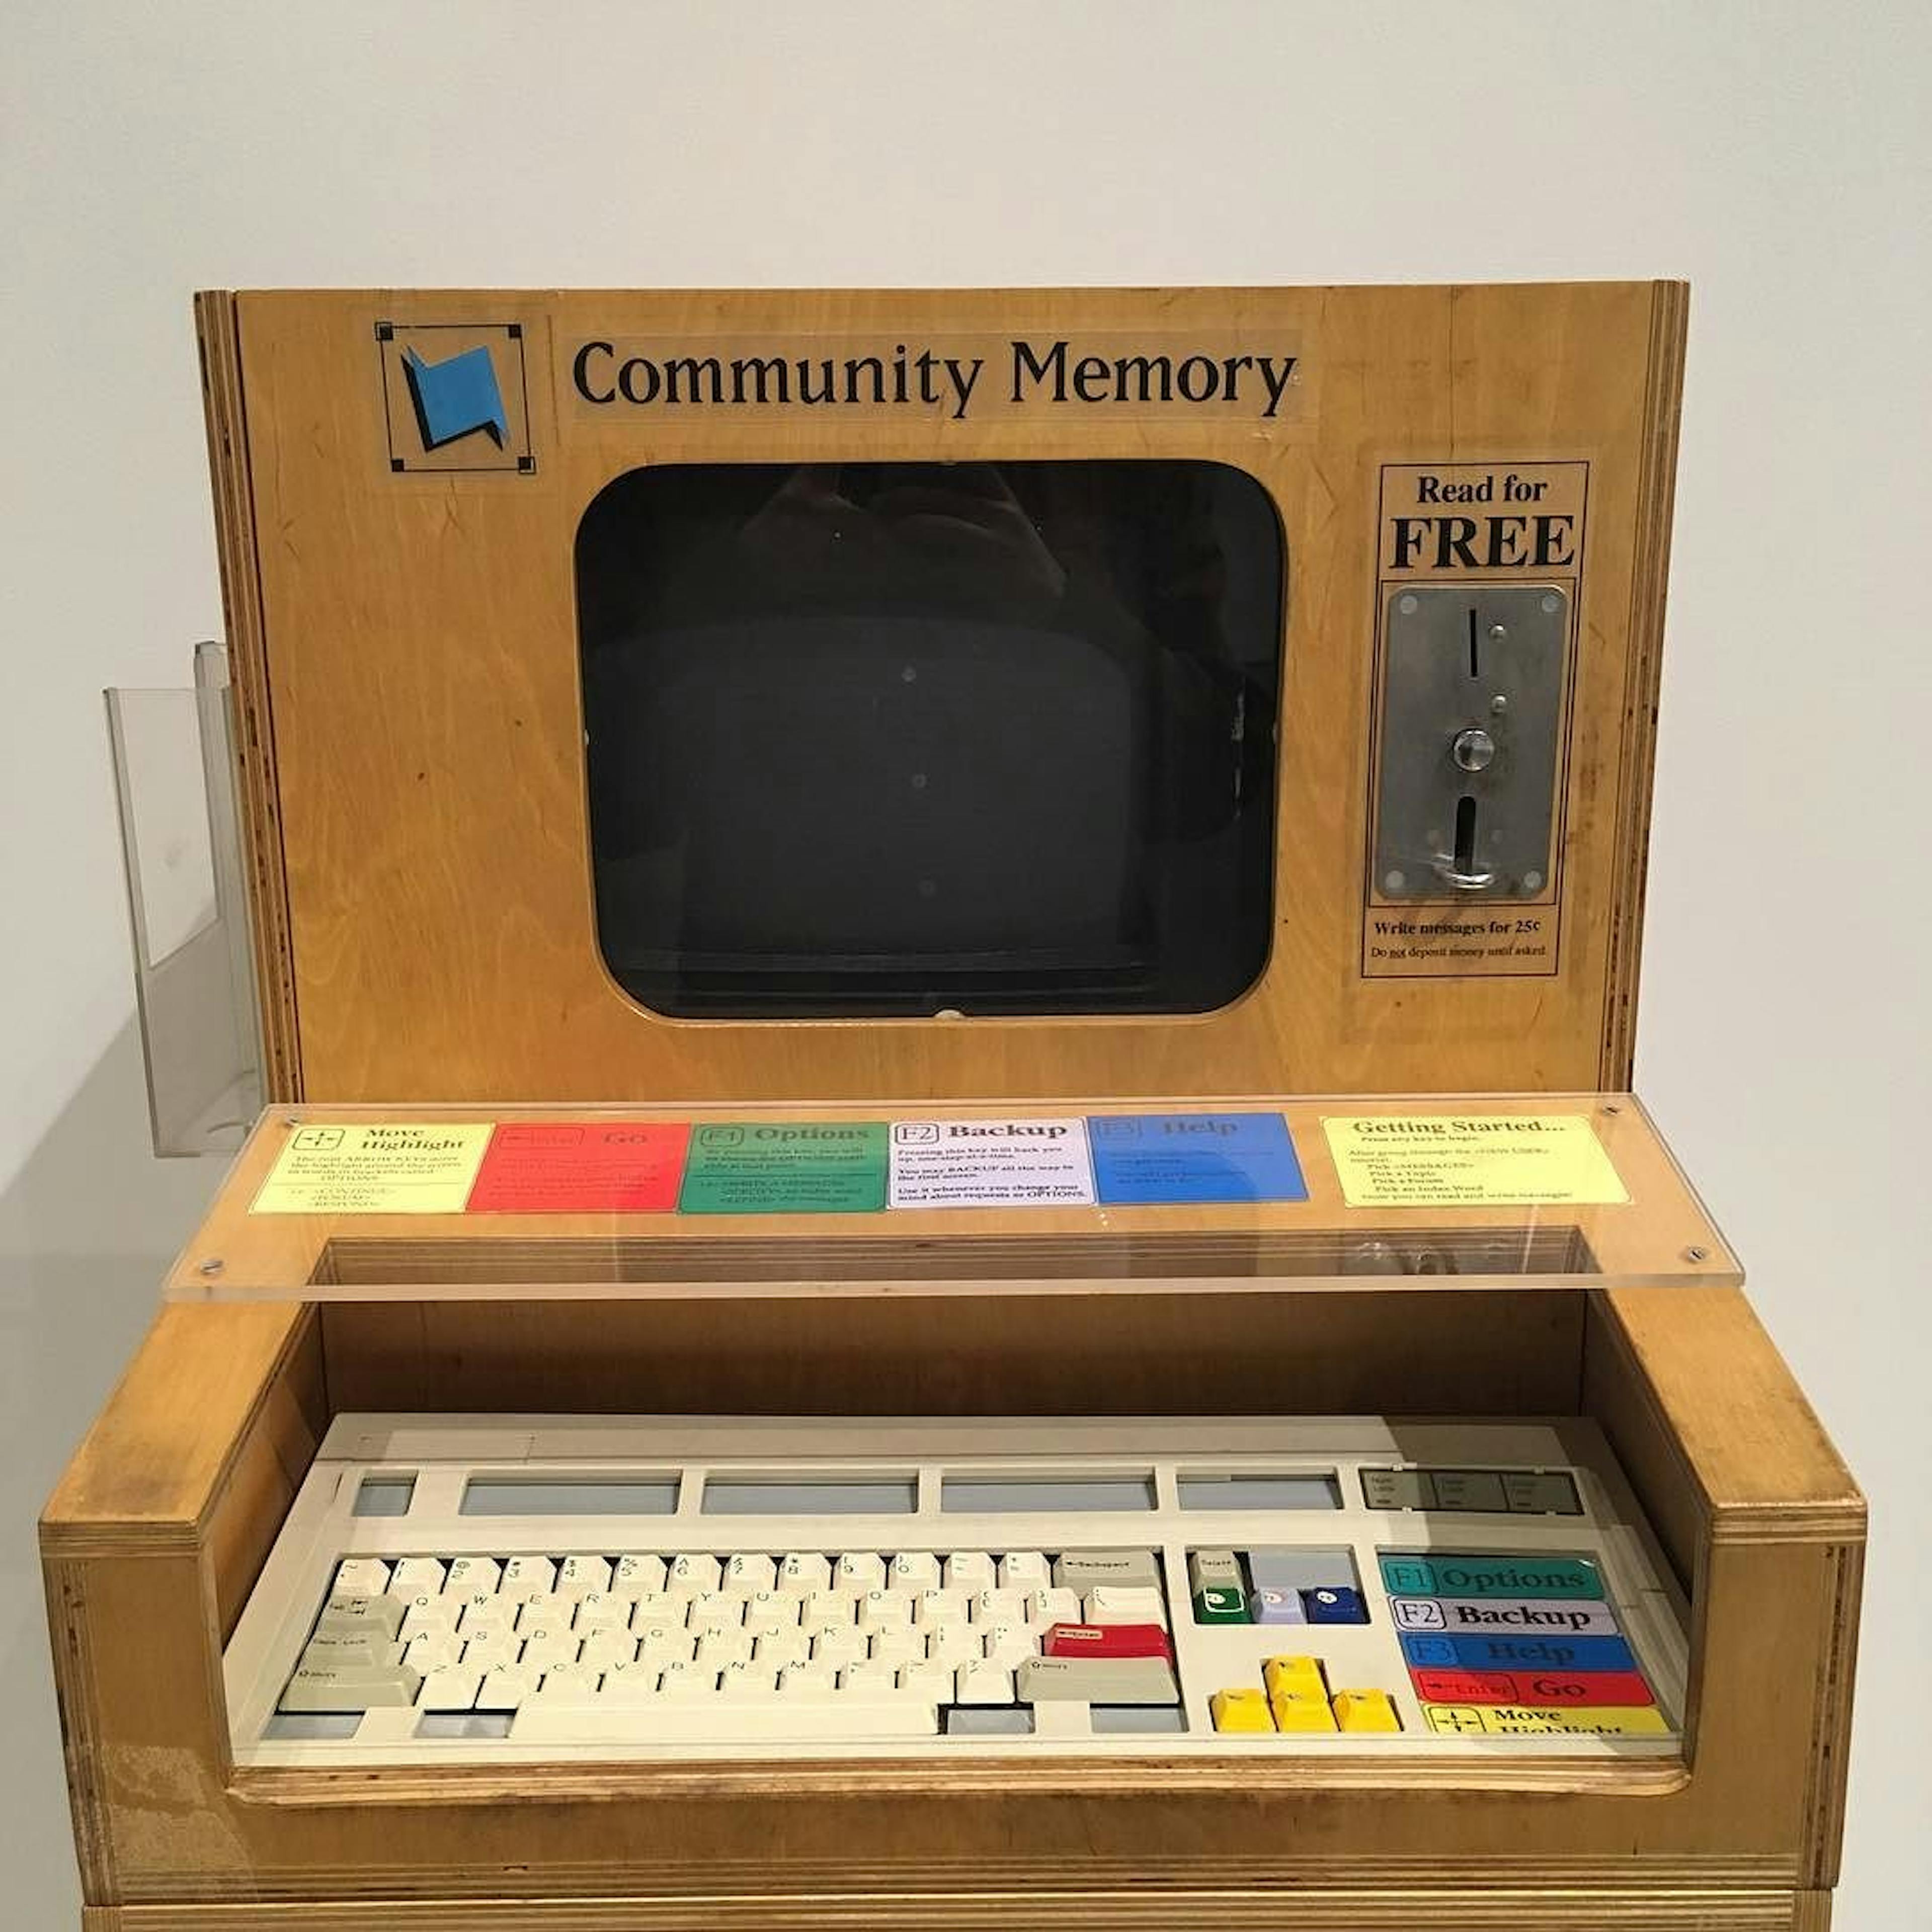 Terminal de mémoire communautaire au Computer History Museum (Californie). Image d'Evan P. Cordes / Wikimédia